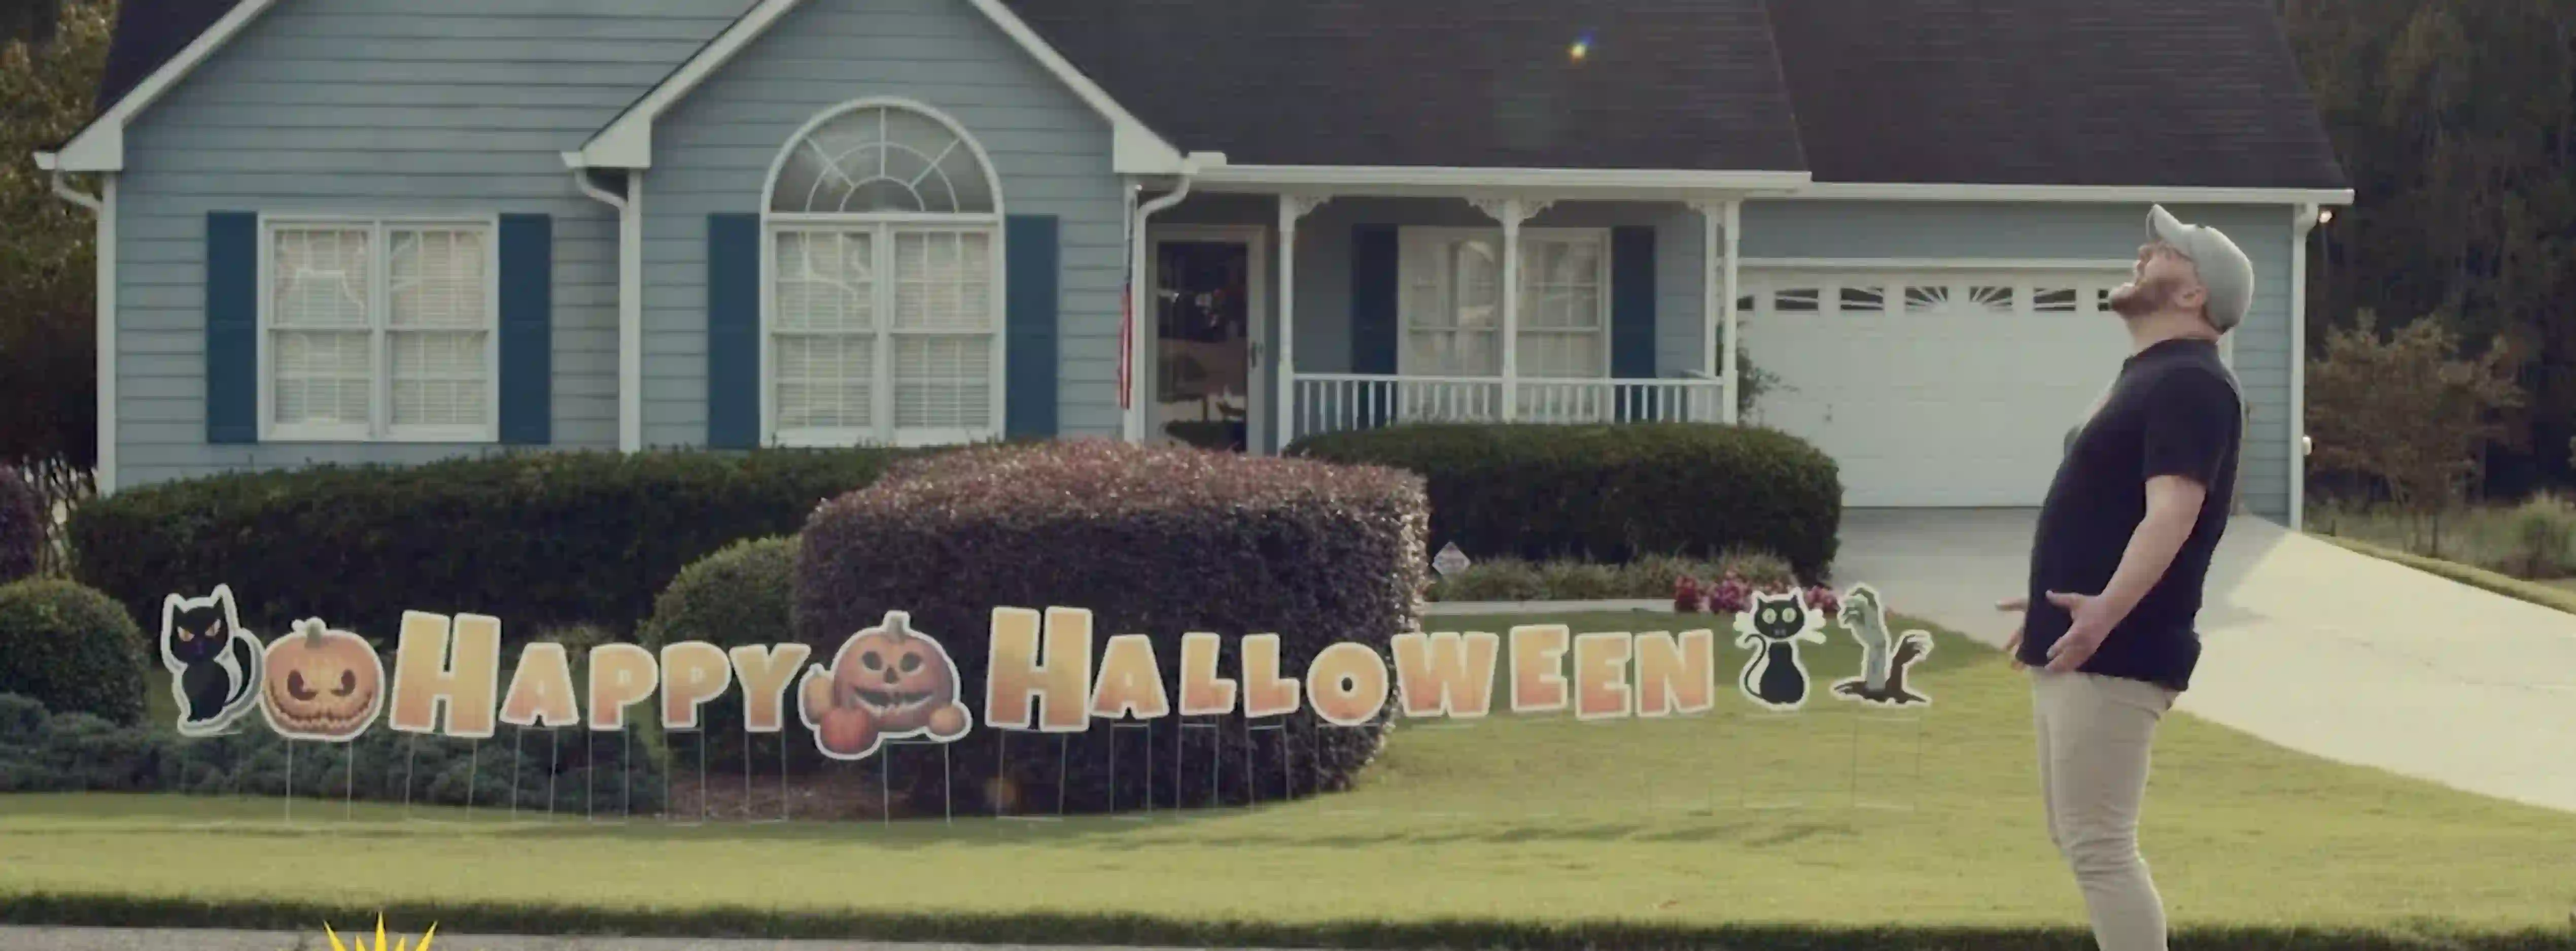 halloween letters in lawn